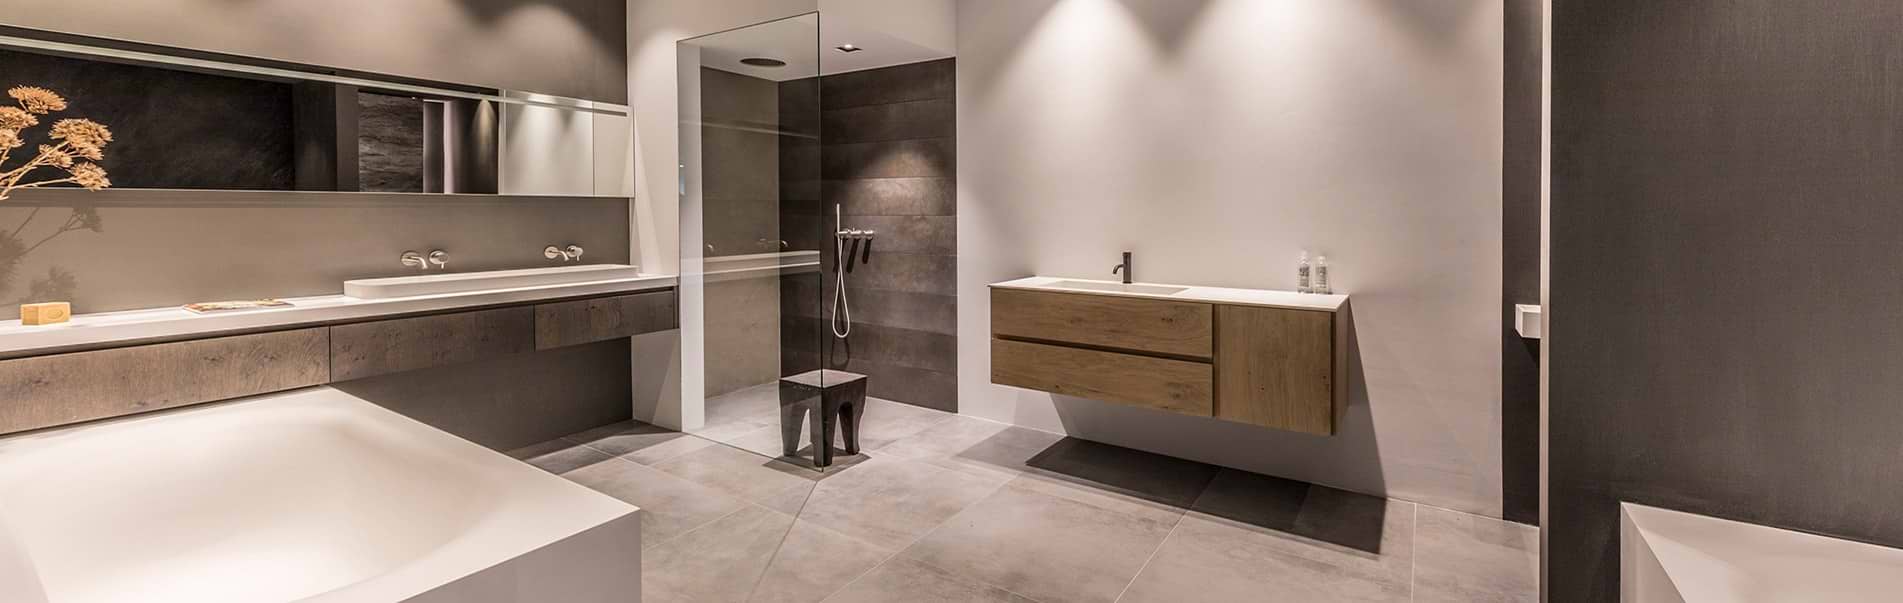 B Dutch badkamers. Design badkamers. Een Nederlands design label met diverse badkamer concepten en alle elementen voor een luxe design badkamer.